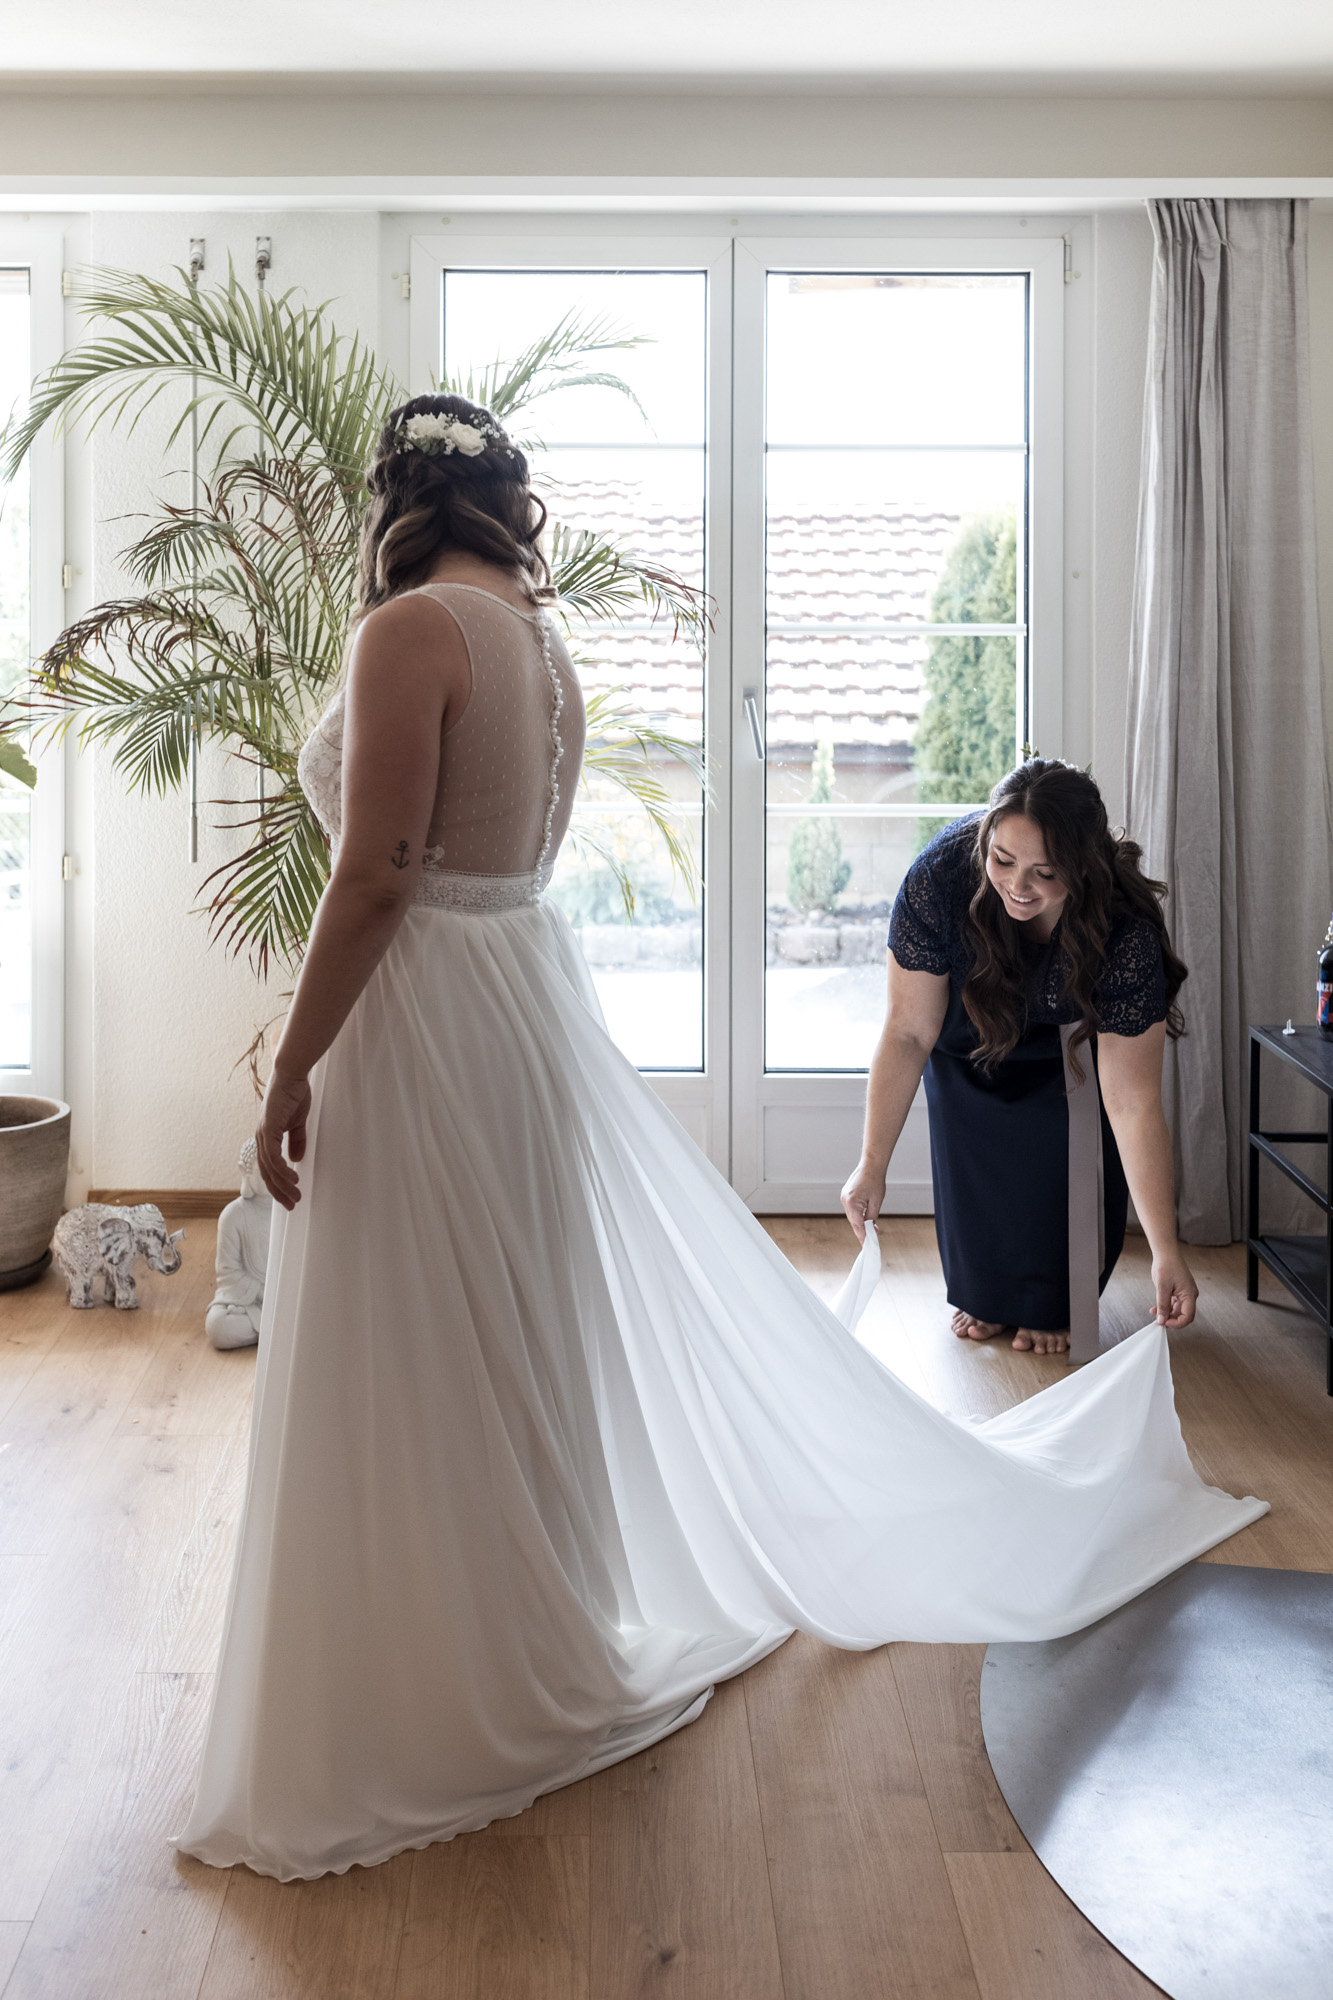 Die Braut und das Hochzeitskleid